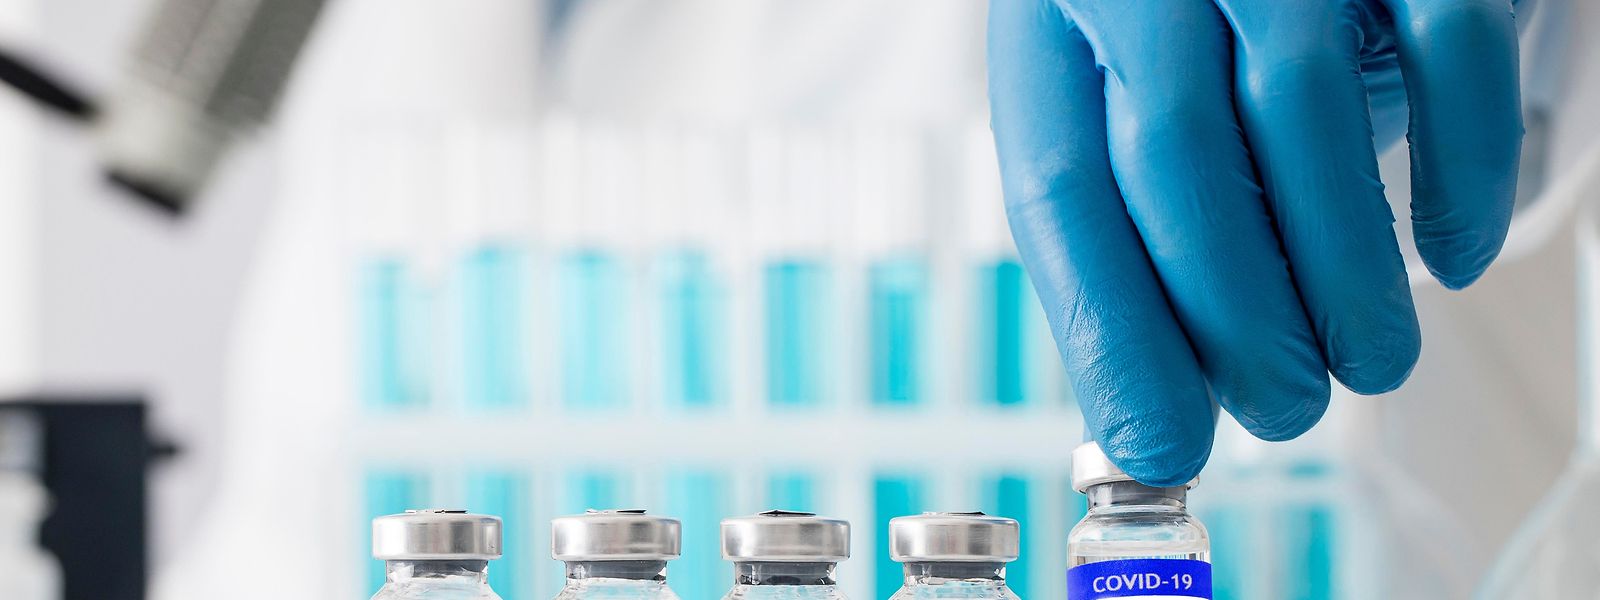 Le recours au vaccin Novavax est autorisé dans le cadre d’un schéma vaccinal mix-and-match.